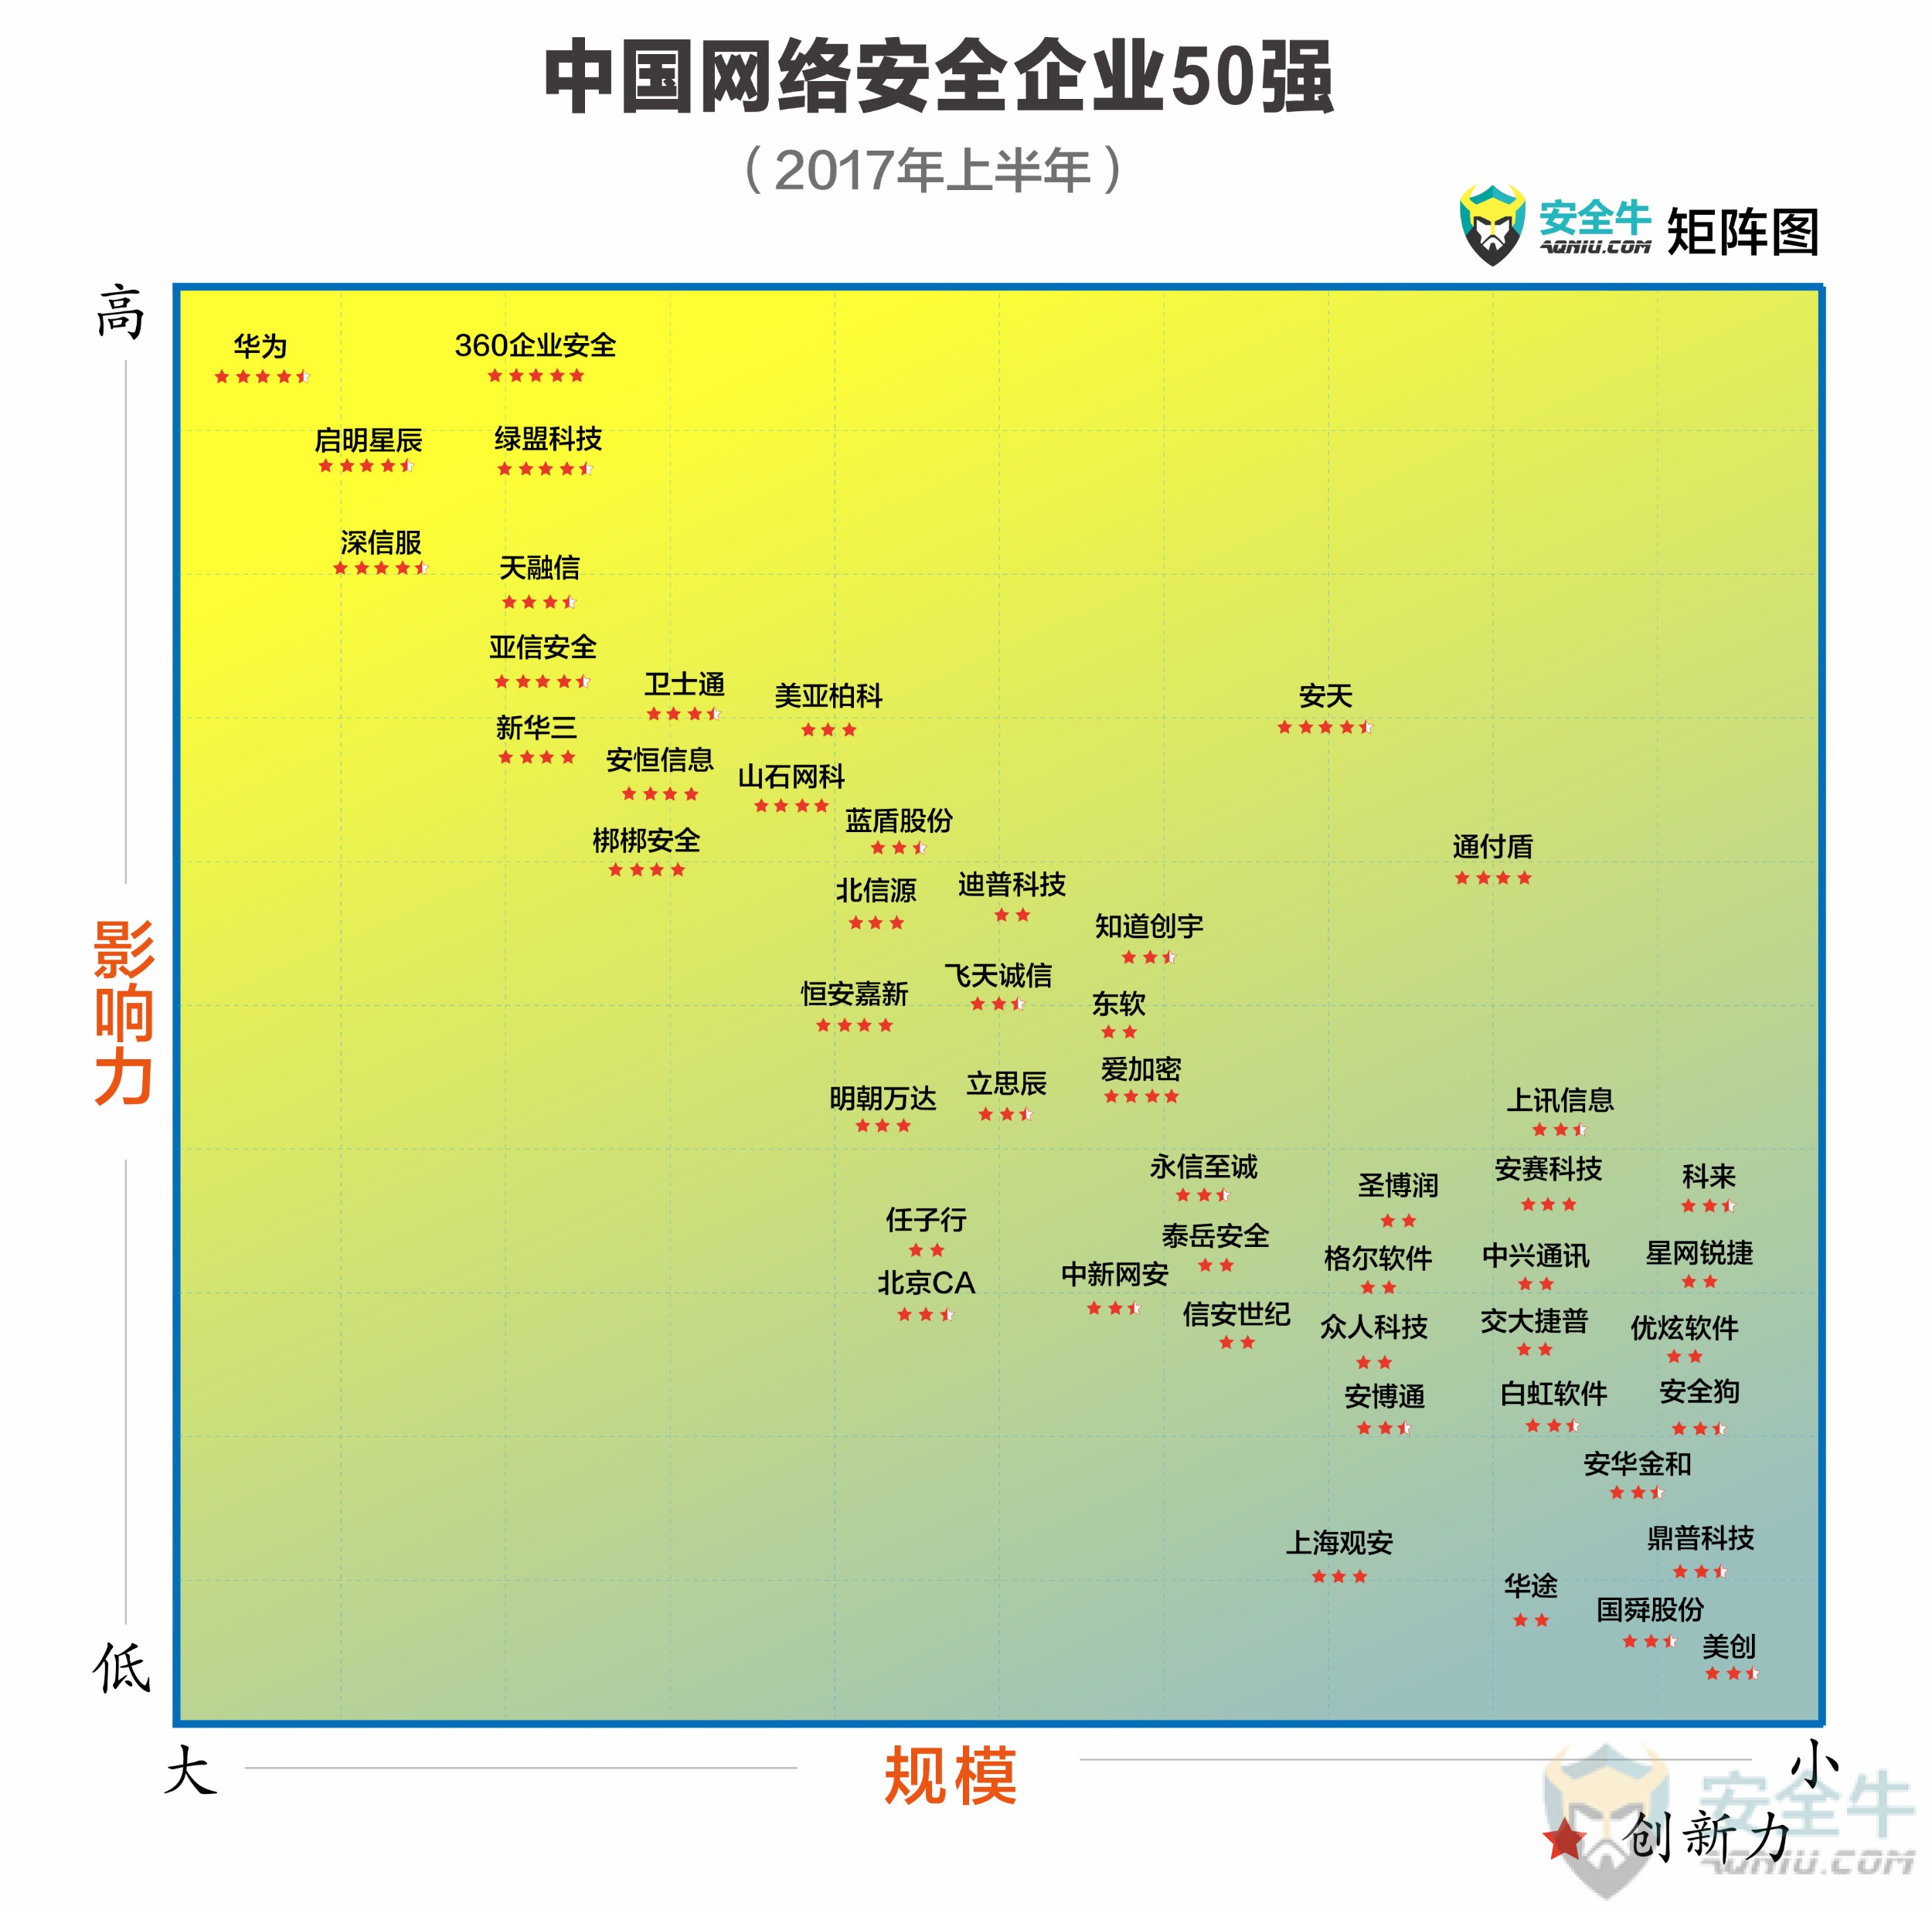 中国网络安全企业50强-17上-2500.jpg